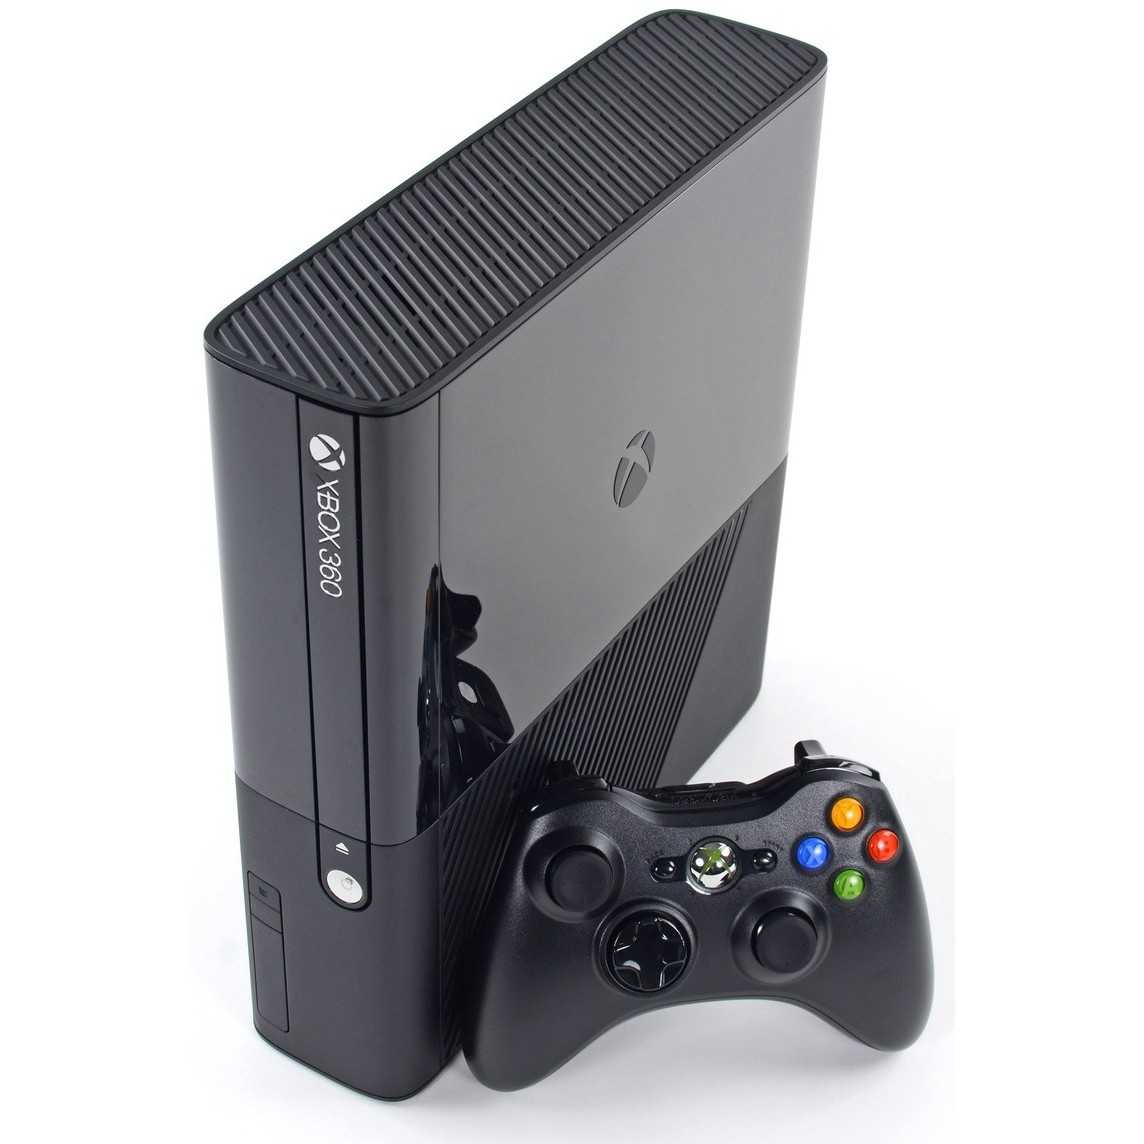 Microsoft xbox 360 slim 250gb + 2 игры moto forza 3 и alan wake (rki-00039) - купить , скидки, цена, отзывы, обзор, характеристики - игровые приставки